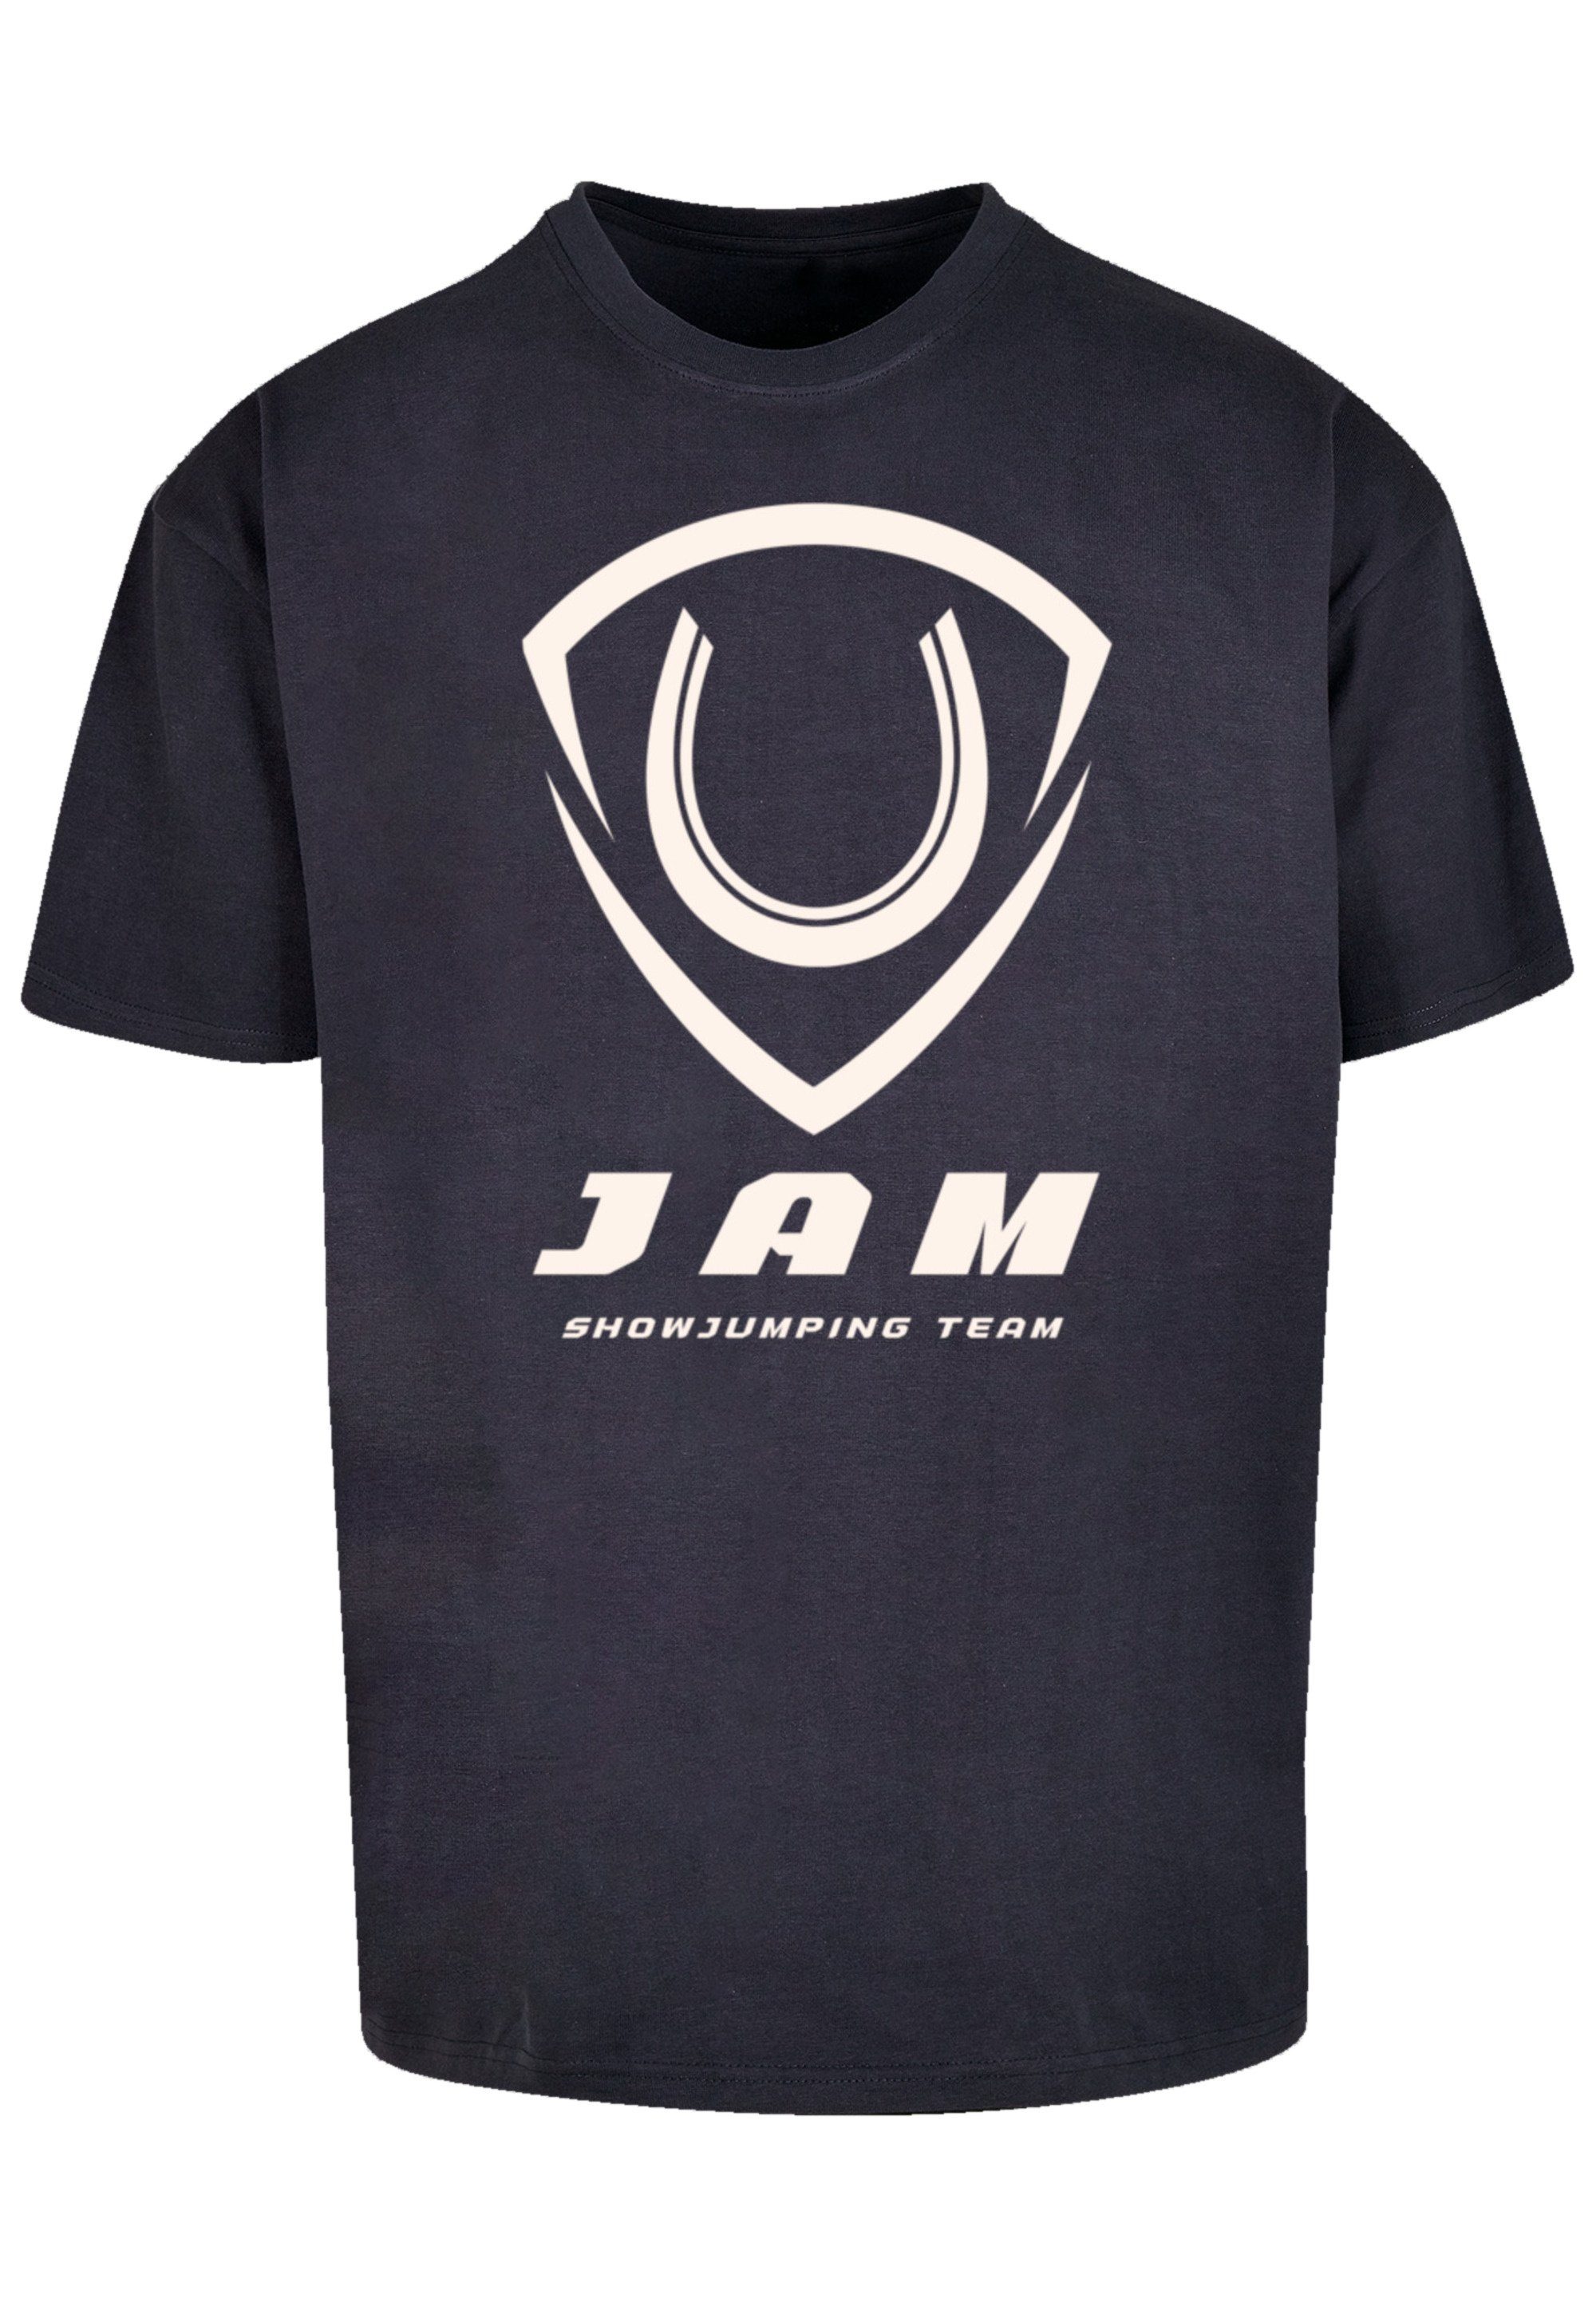 T-Shirt JAM Print navy F4NT4STIC Showjumping